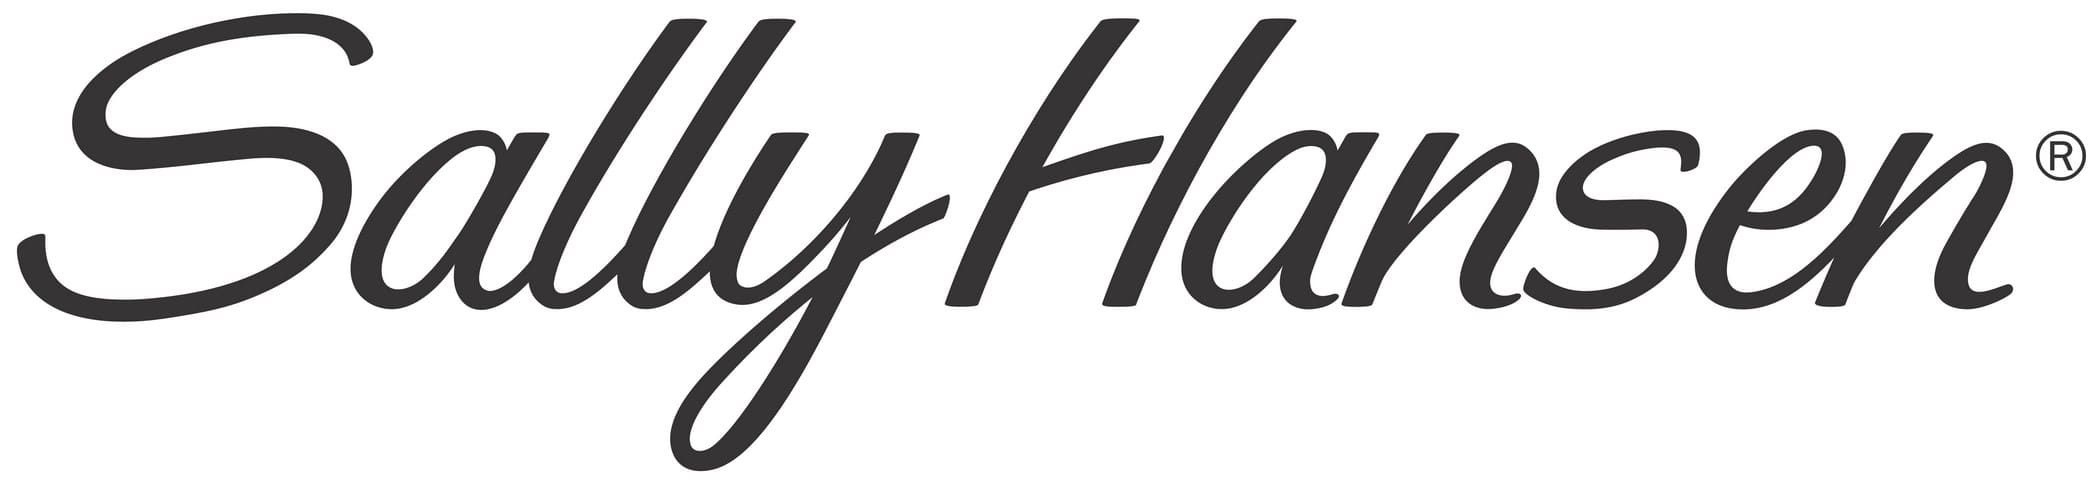 sally hansen logo